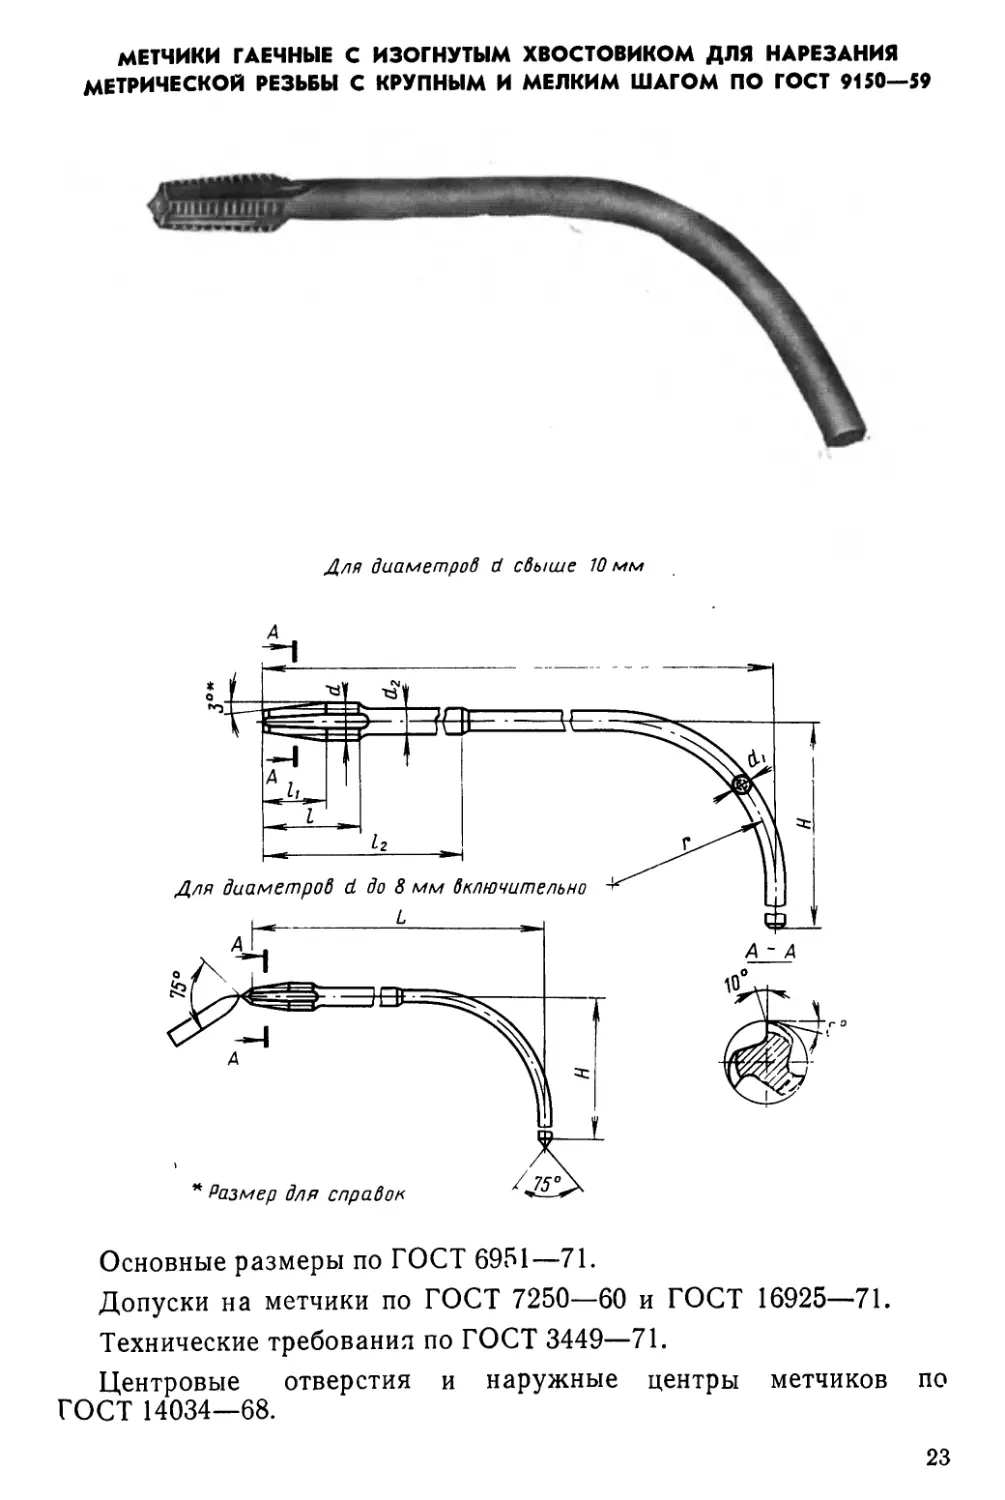 Метчики гаечные с 'изогнутым хвостовиком для нарезания метрической резьбы с крупным «и мелким шагом по ГОСТ 9150—59